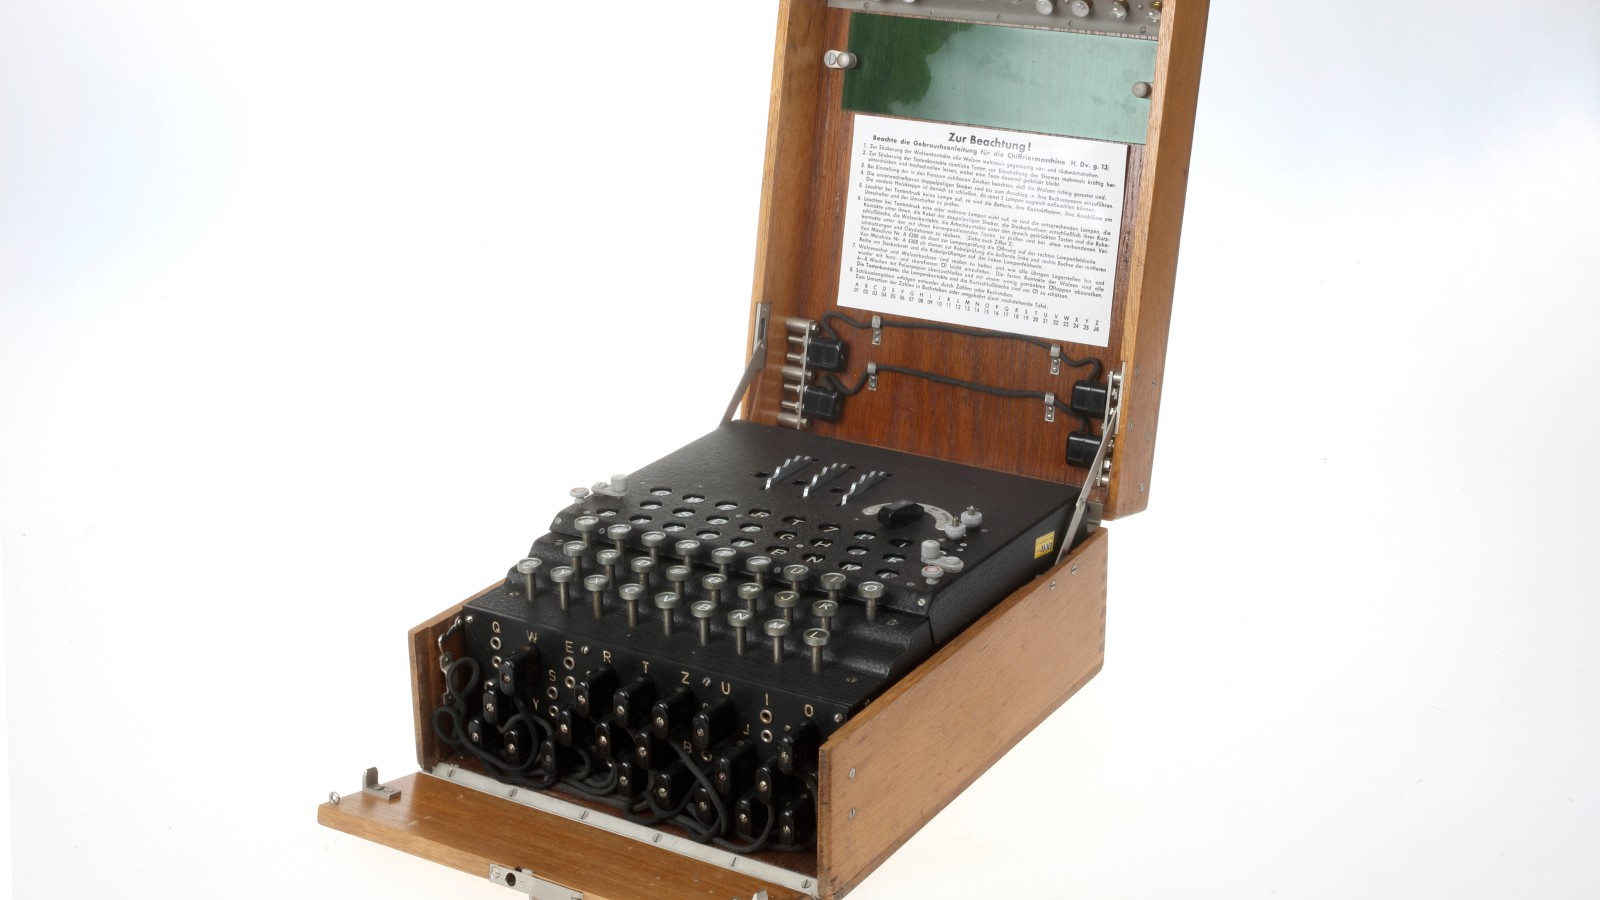 Chiffriermaschine Enigma, 1937